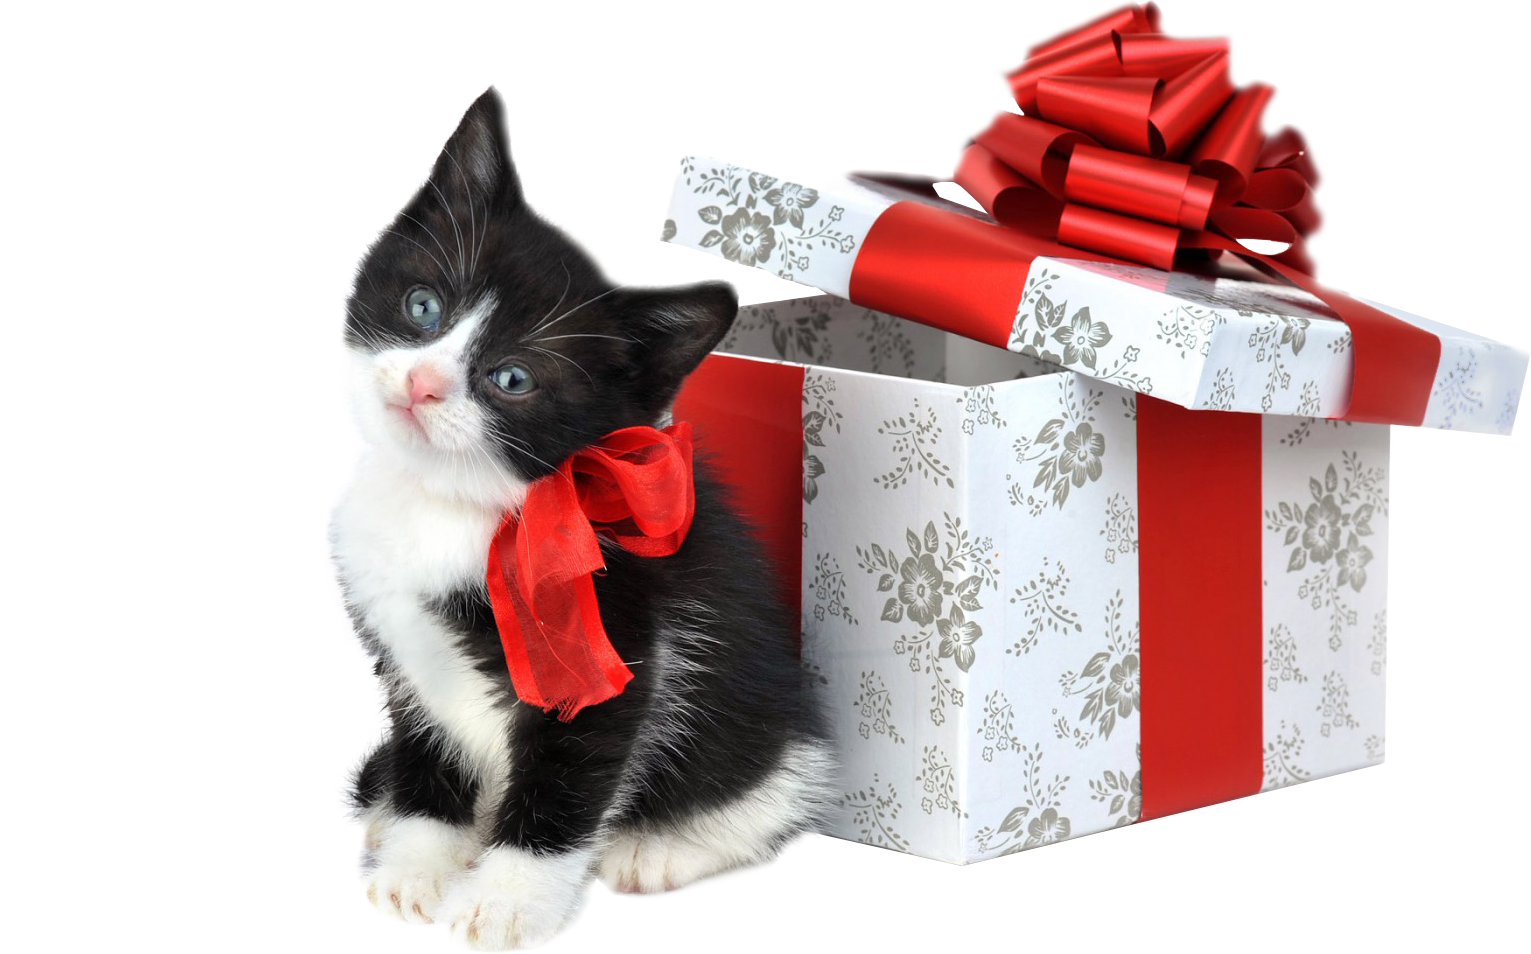 Christmas Kitten Free Download Image PNG Image